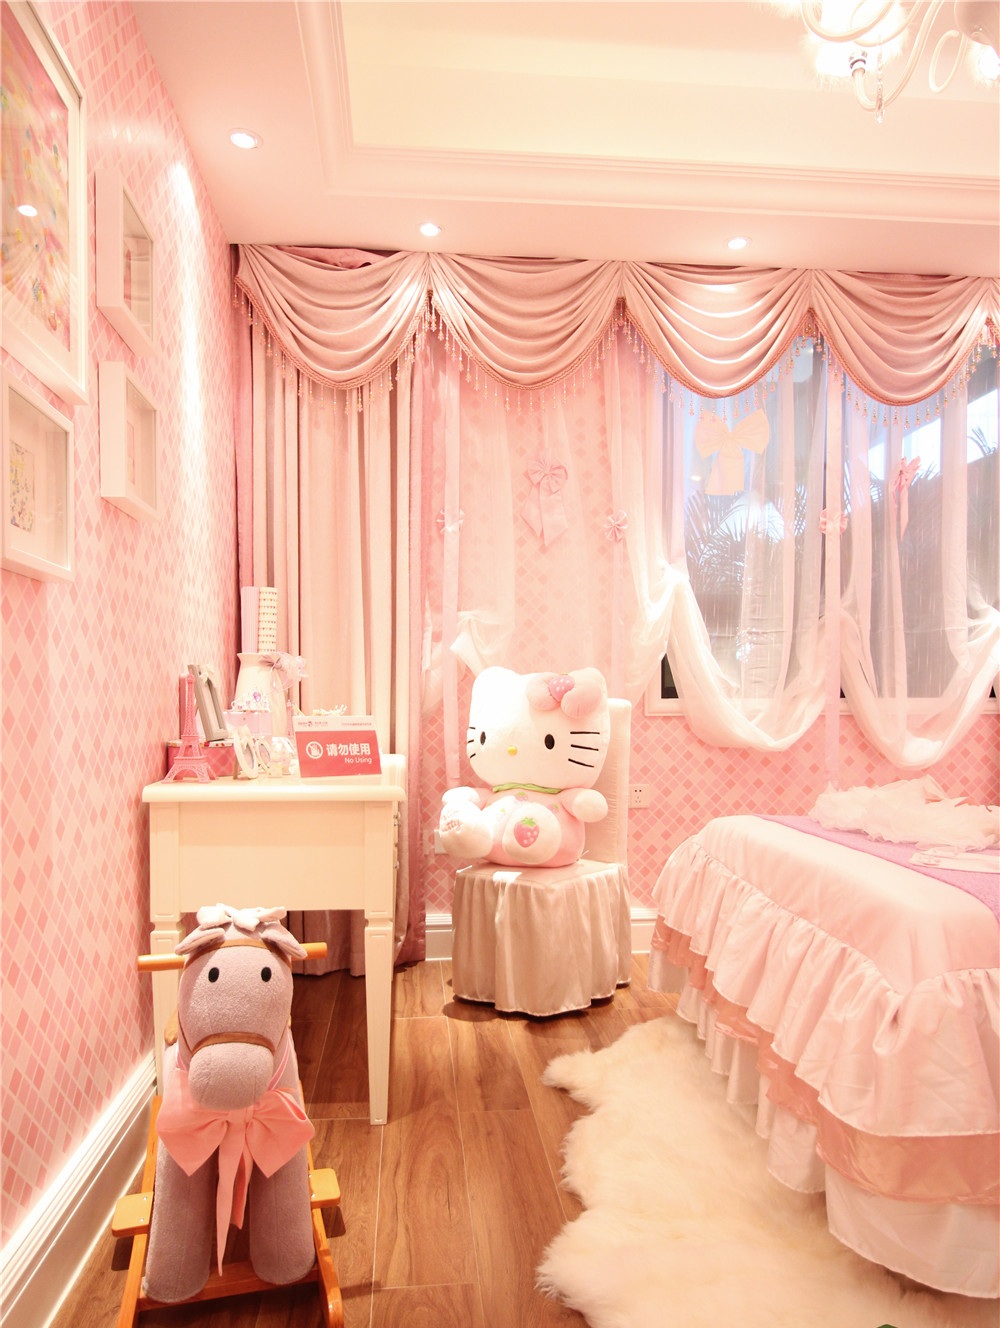 这套粉色系简欧两居室,简直迷倒万千少女心!